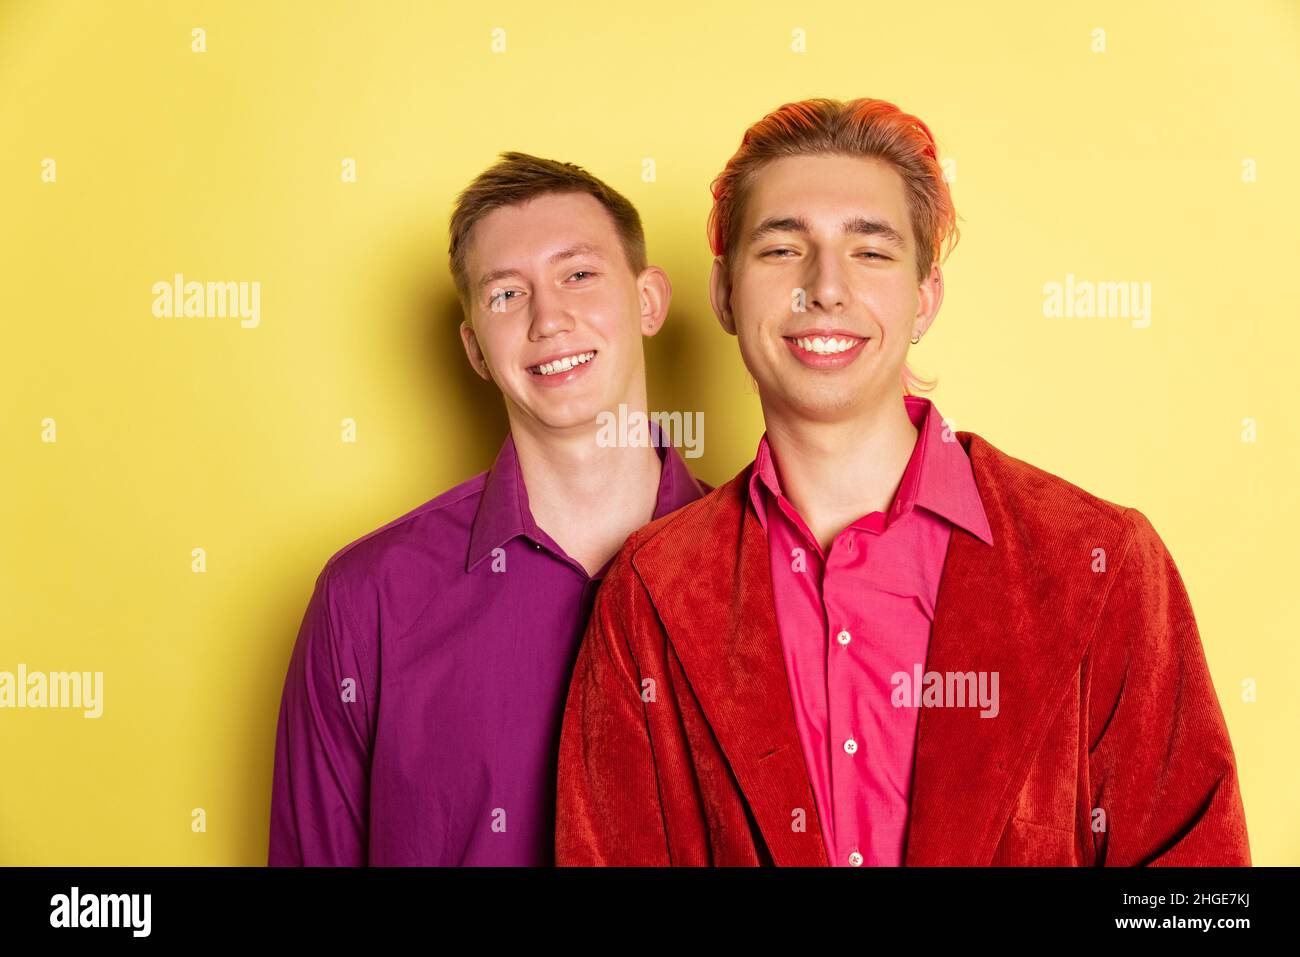 Portrait de jeunes hommes, couple posant isolé sur fond jaune.Célébration de la Saint-Valentin.Concept des émotions, de l'amour, des relations, romantique Banque D'Images